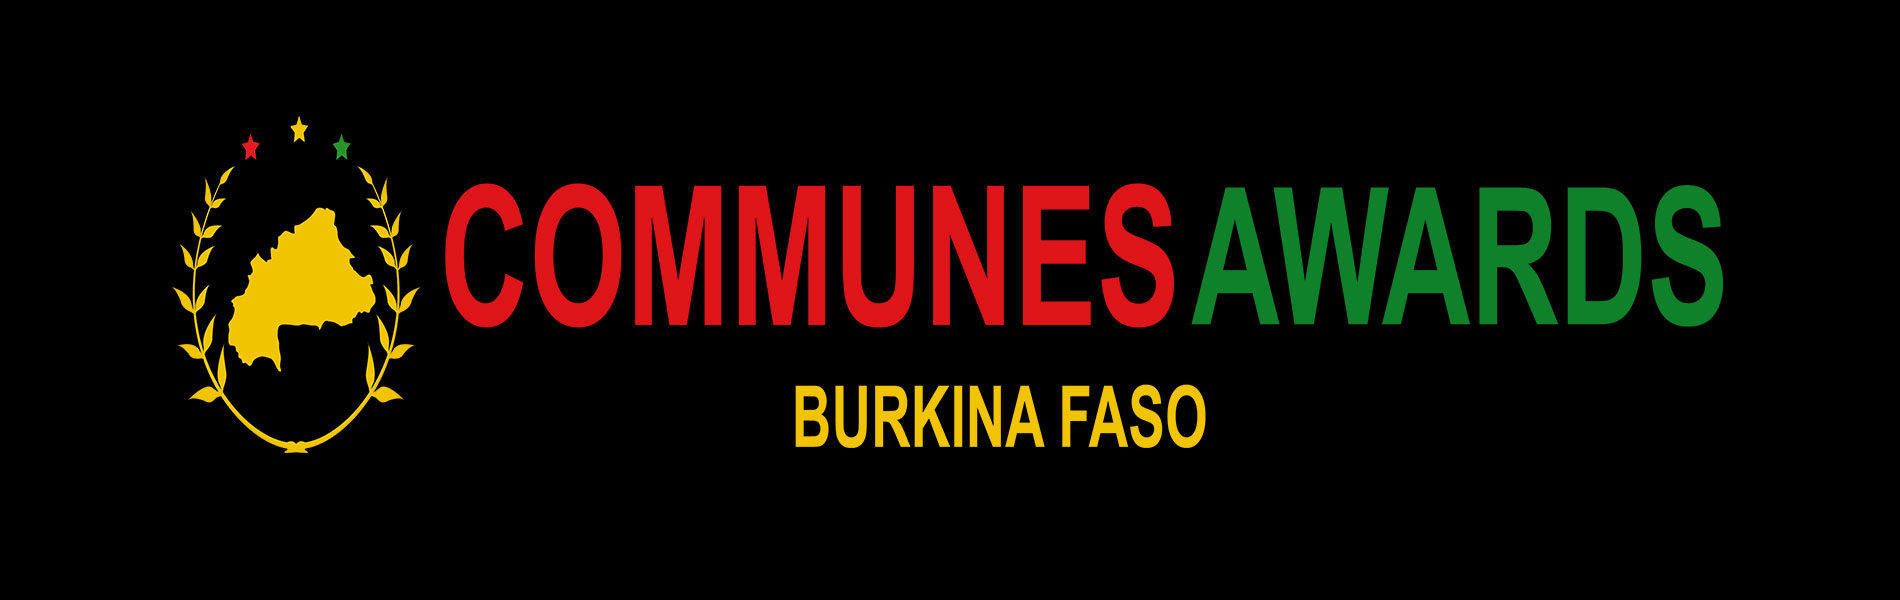 Burkina Faso: Communes Awards, une compétition inédite entre les communes pour le développement durable